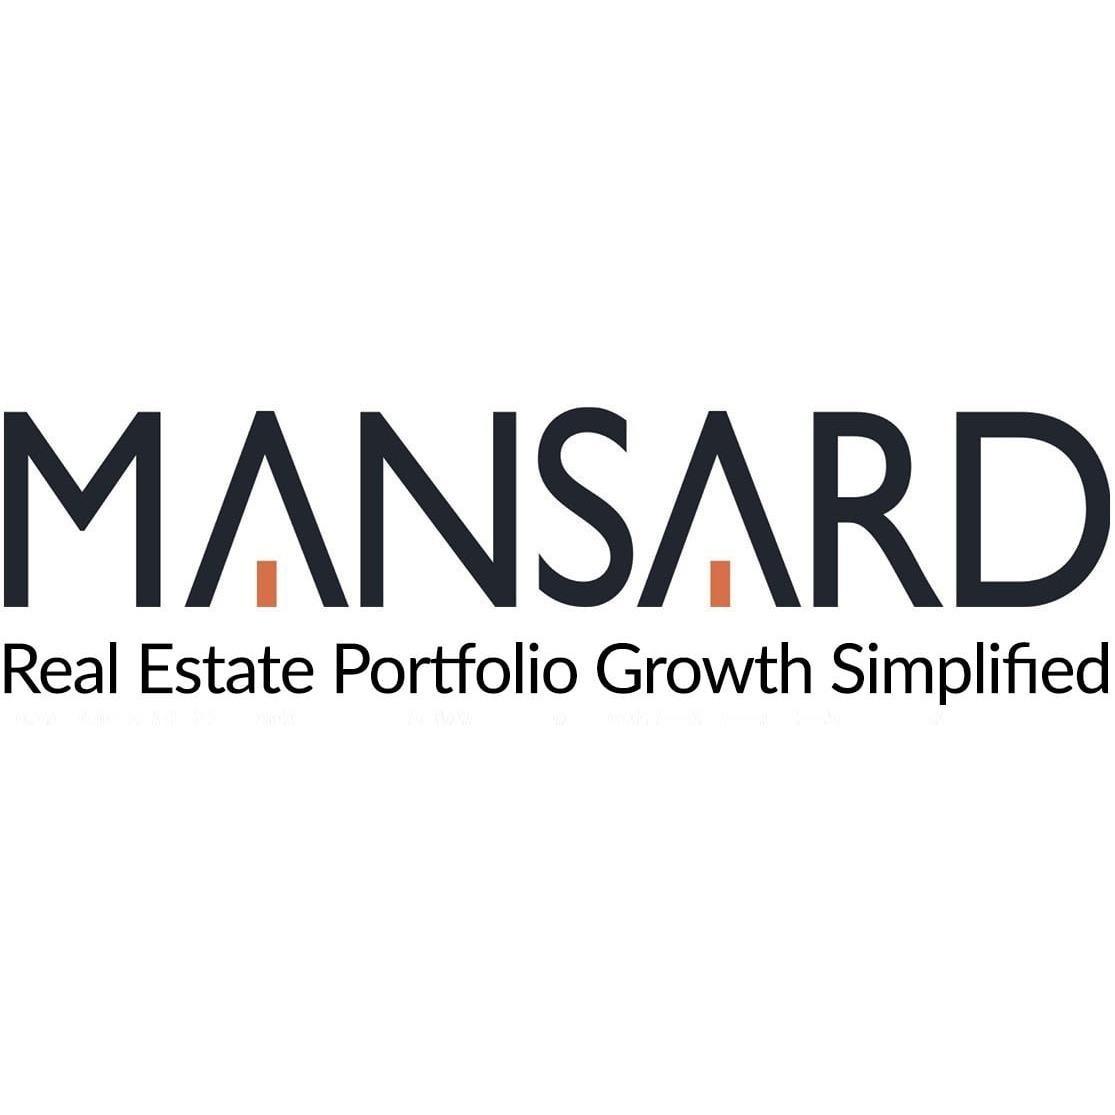 MANSARD Commercial Real Estate Property Sales Logo